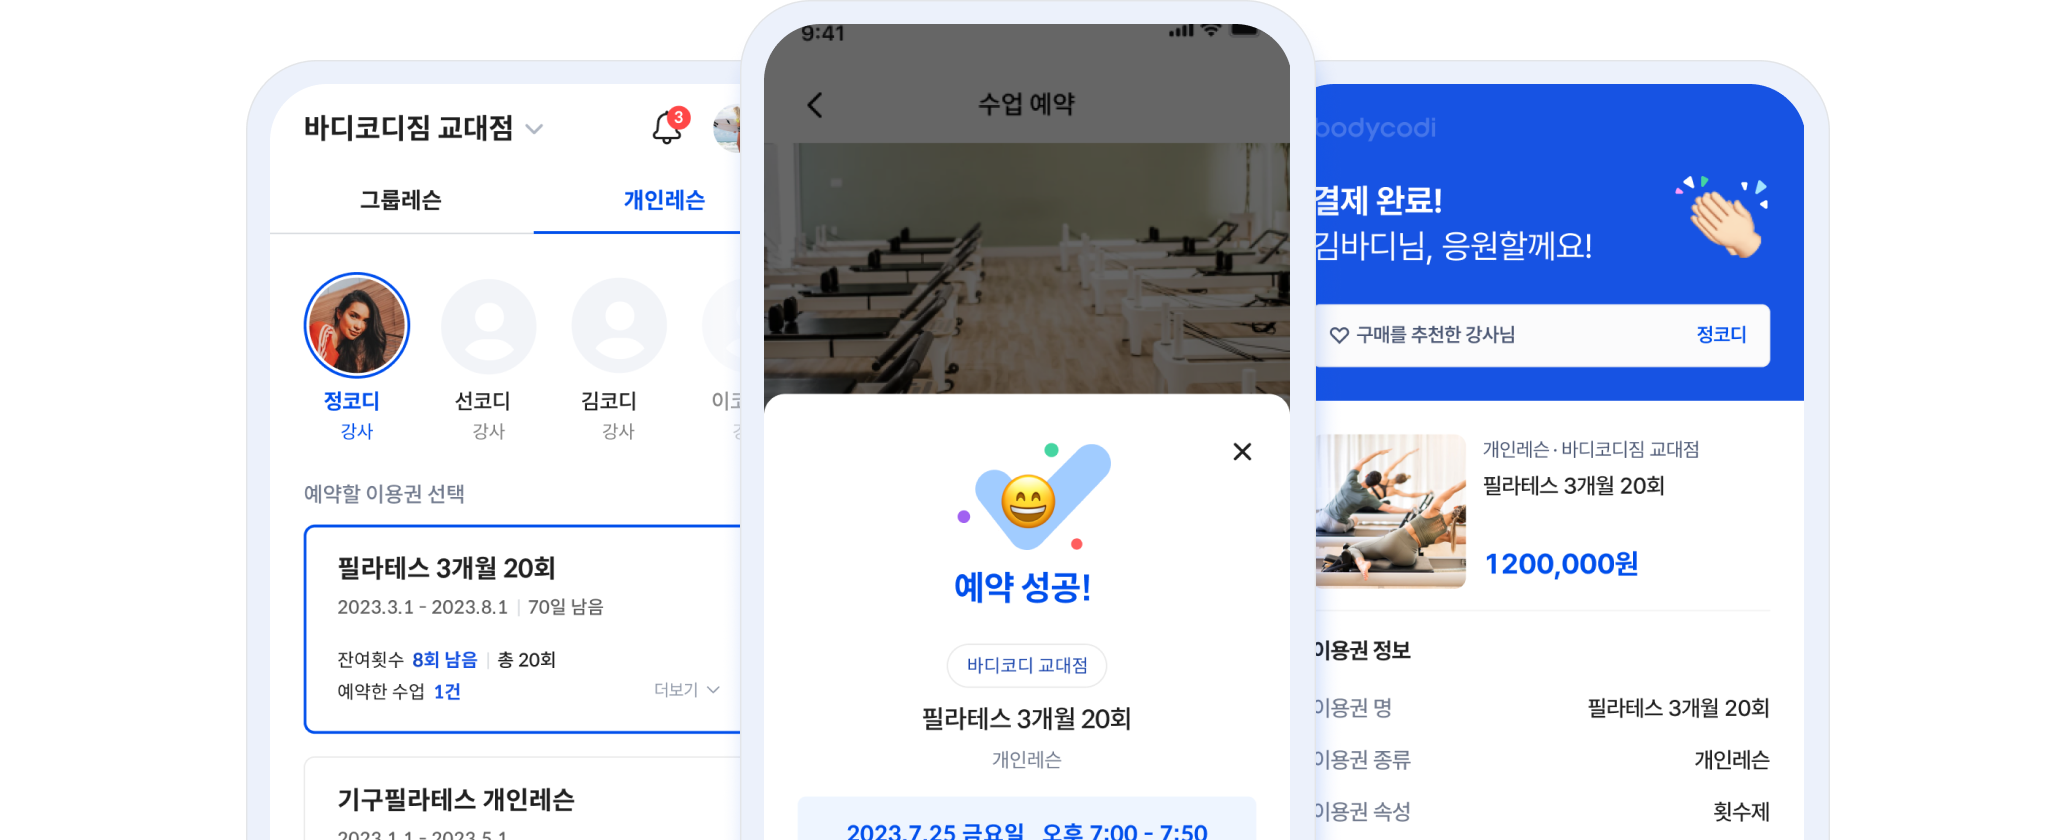 바디코디 회원앱 - 실시간 예약과 모바일 결제